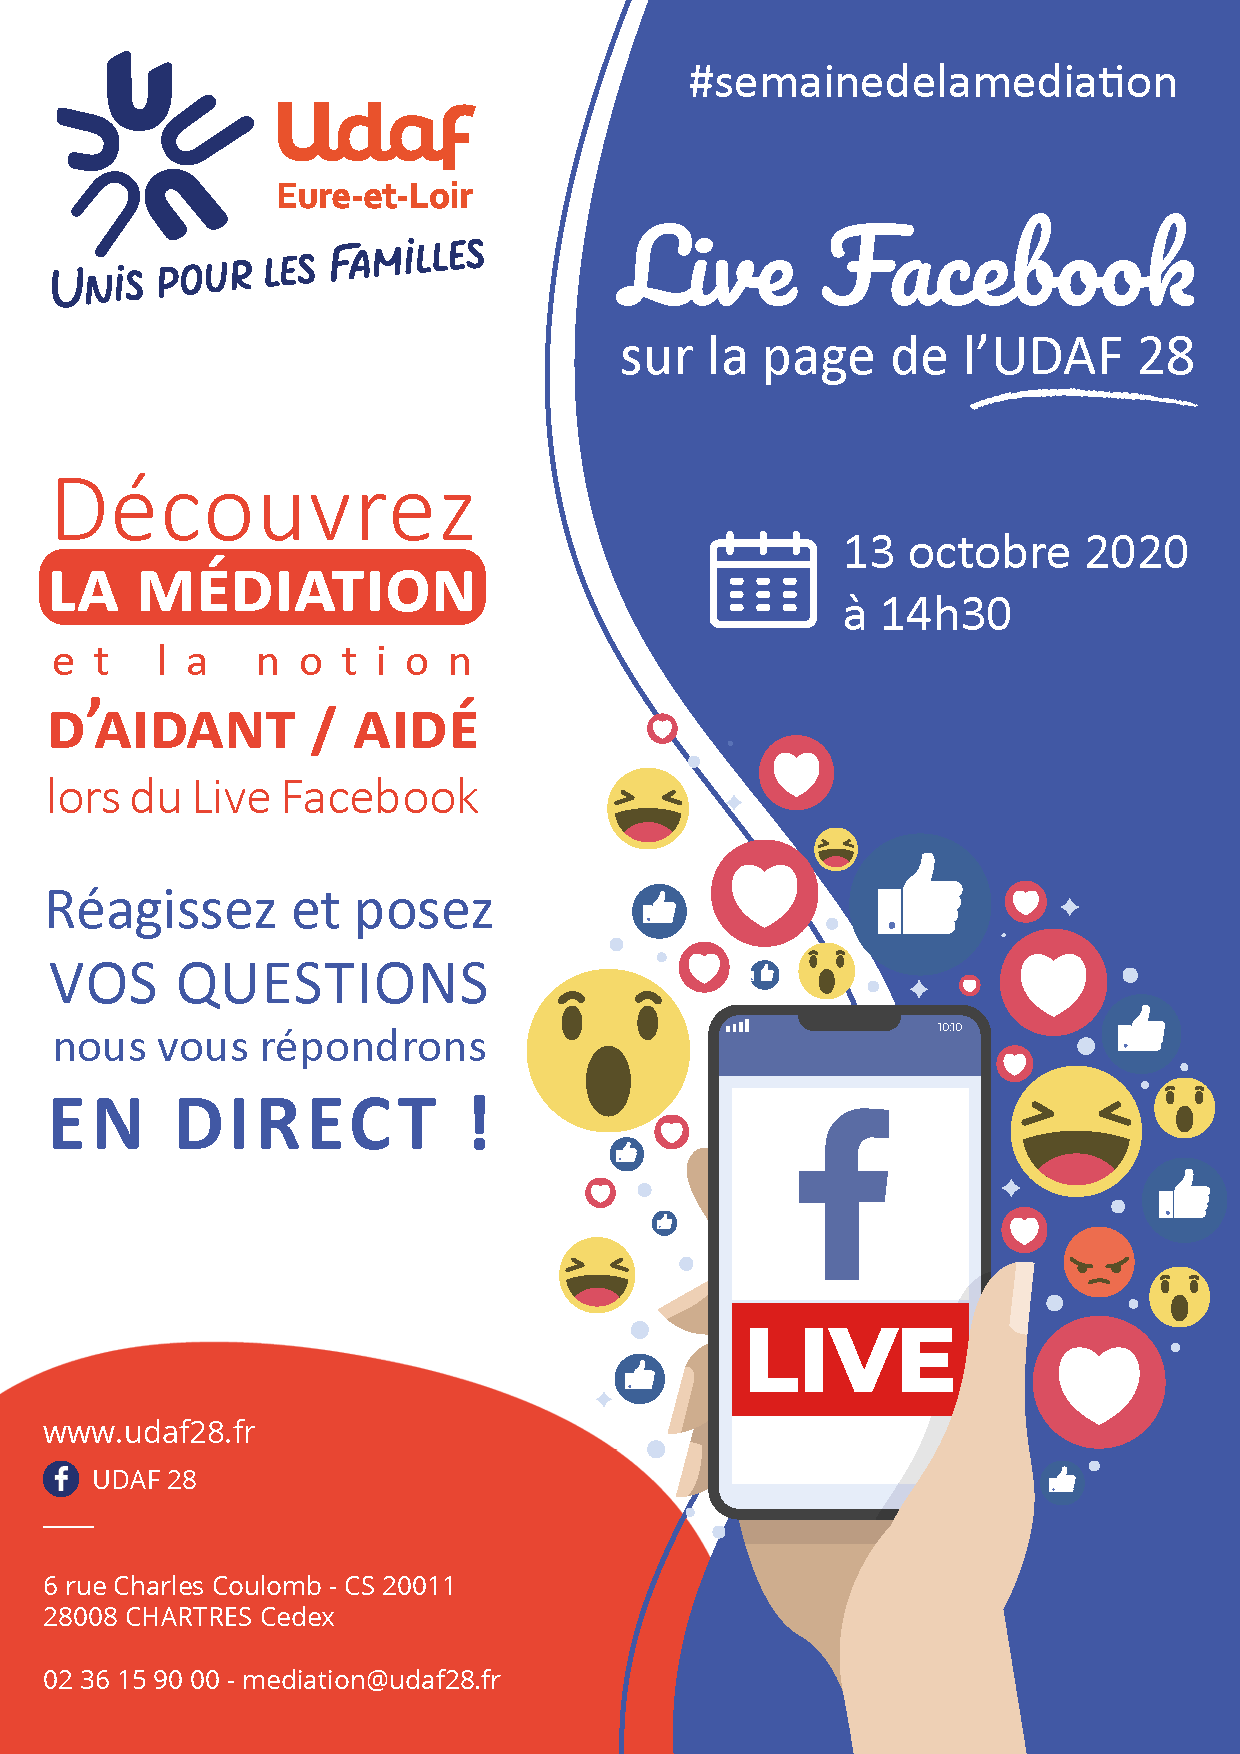 Retrouvez les médiatrices familiales de l'UDAF d'Eure et Loir en direct LIVE sur Facebook